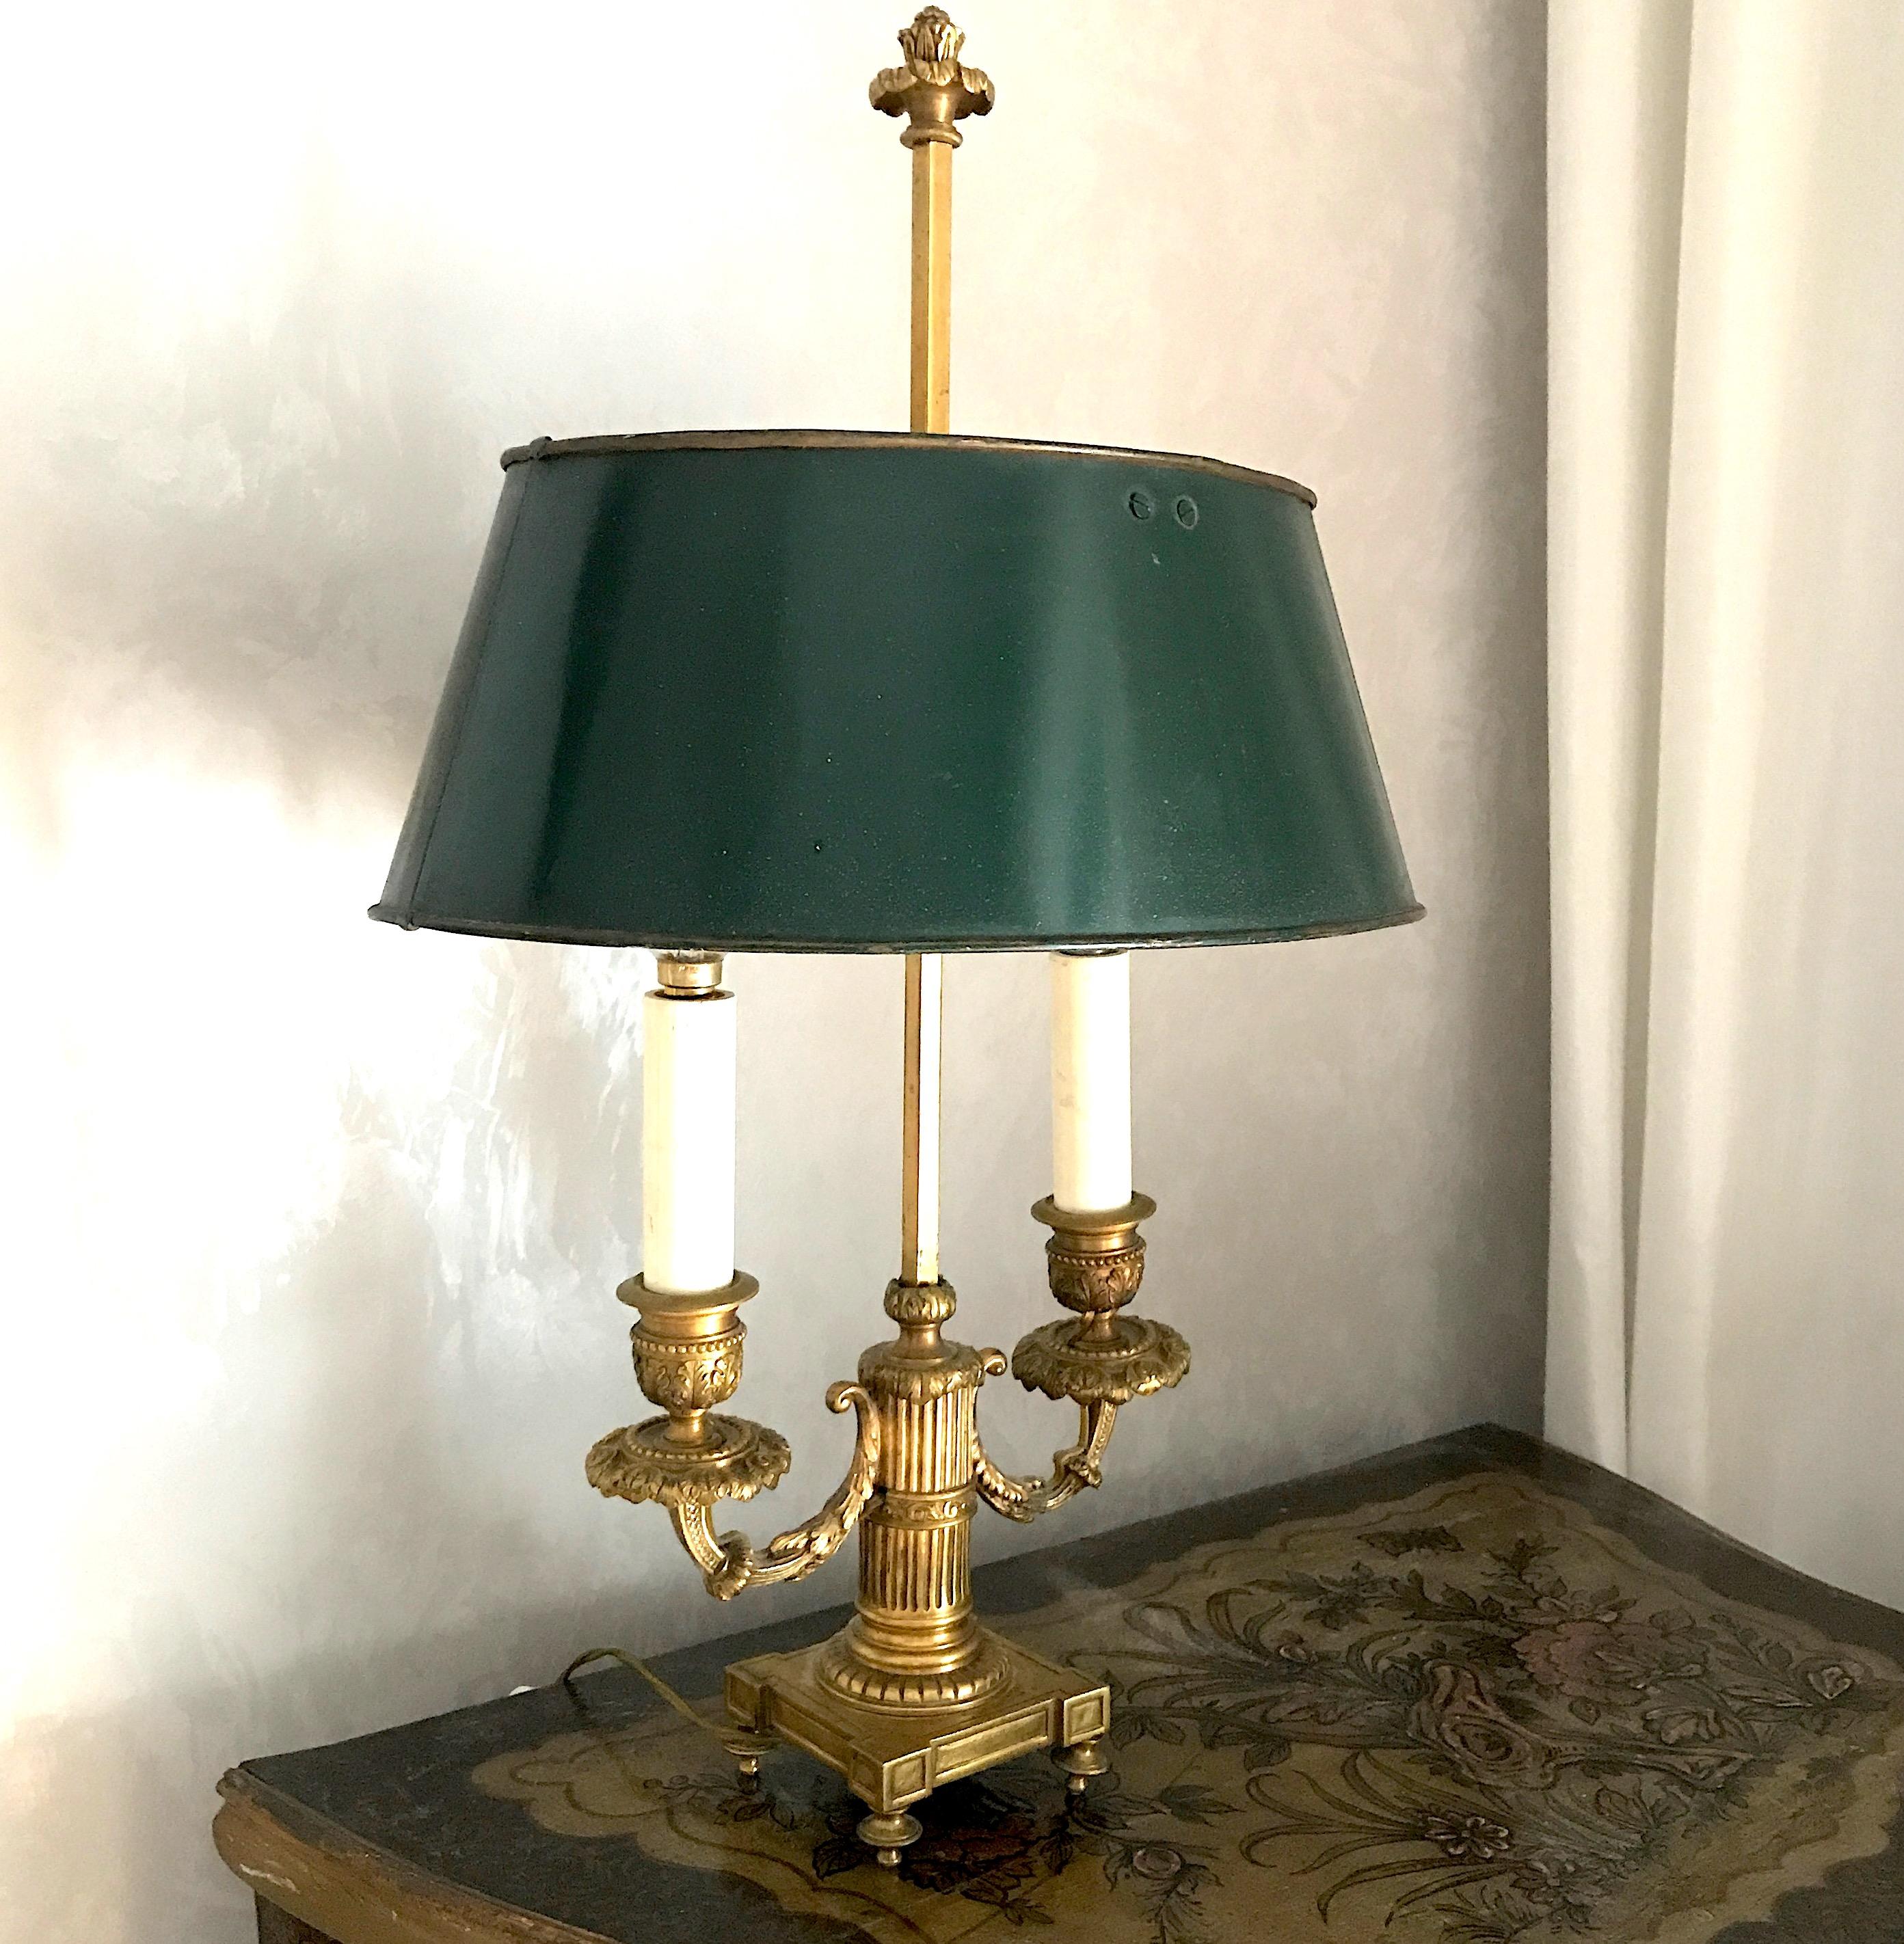 Elégante lampe Bouillotte Empire en bronze doré finement ciselé avec abat-jour réglable en tole peinte vert foncé.
Deux ampoules E 14.
Nous pouvons livrer des câbles pour les normes américaines.
  
 